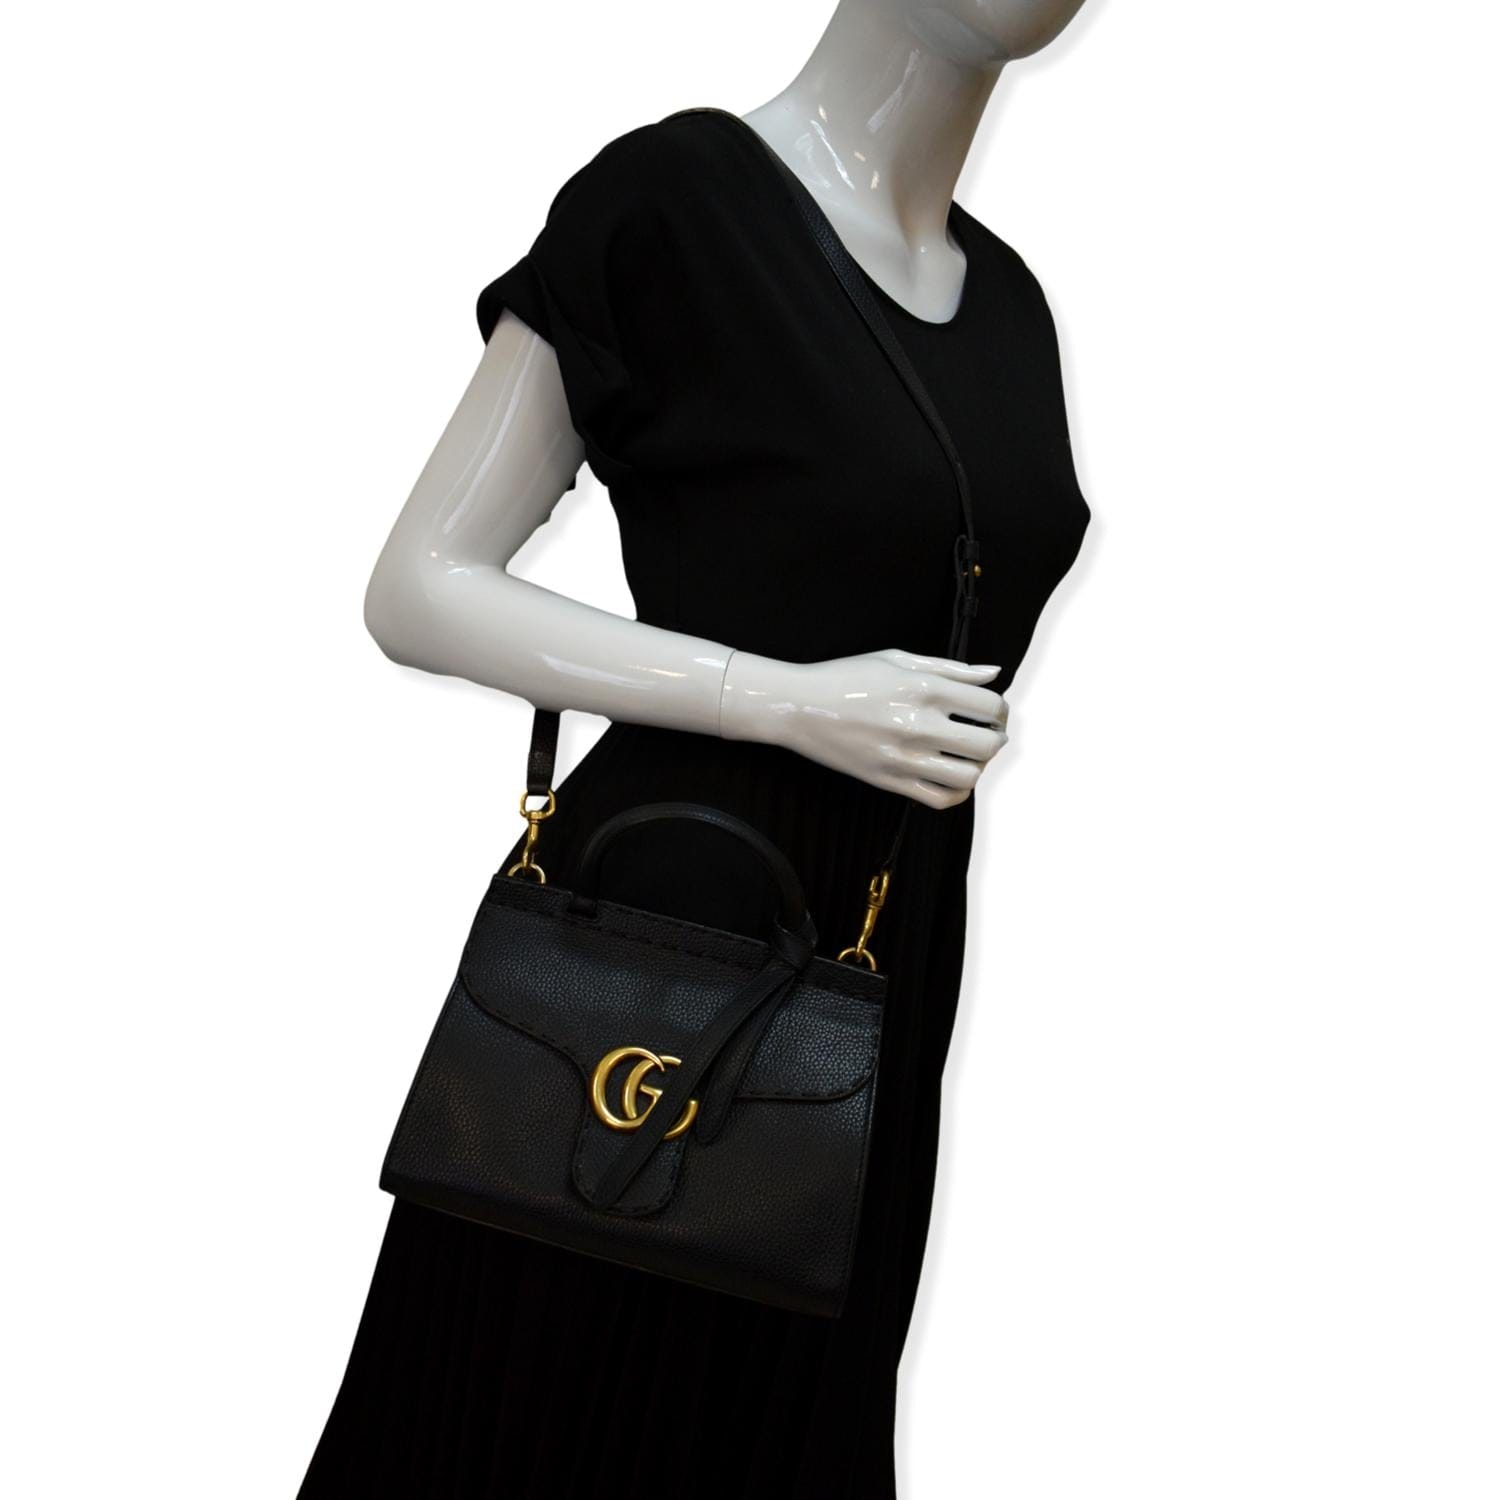 Gucci GG Marmont Leather Shoulder Bag Black